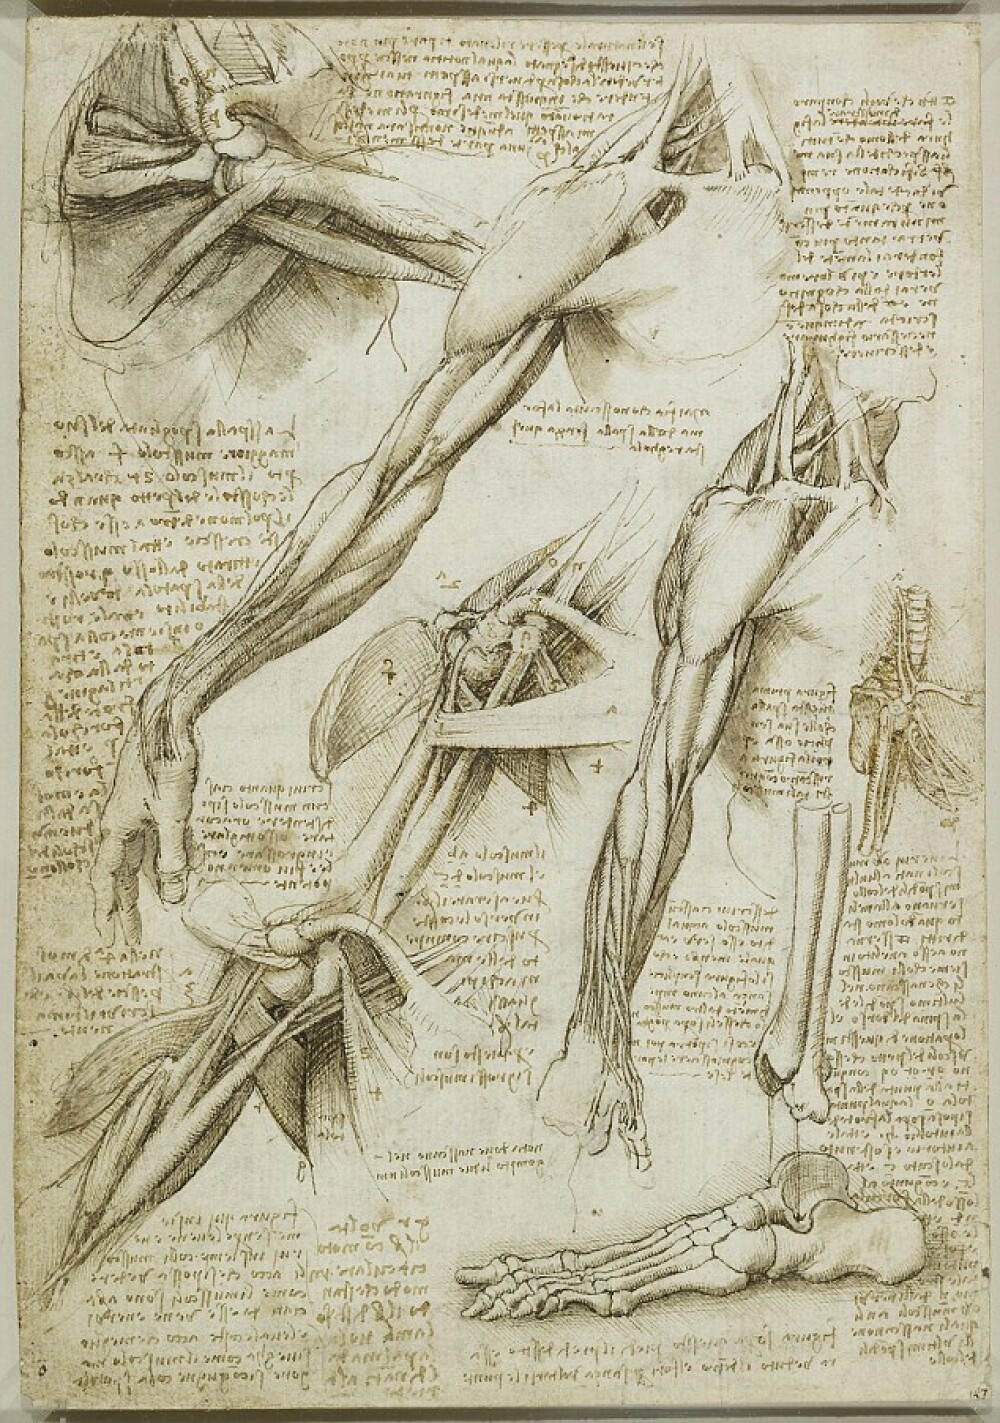 Jurnalul lui Leonardo da Vinci. “De cumparat azi: hartie, carbune si un craniu uman” - Imaginea 3